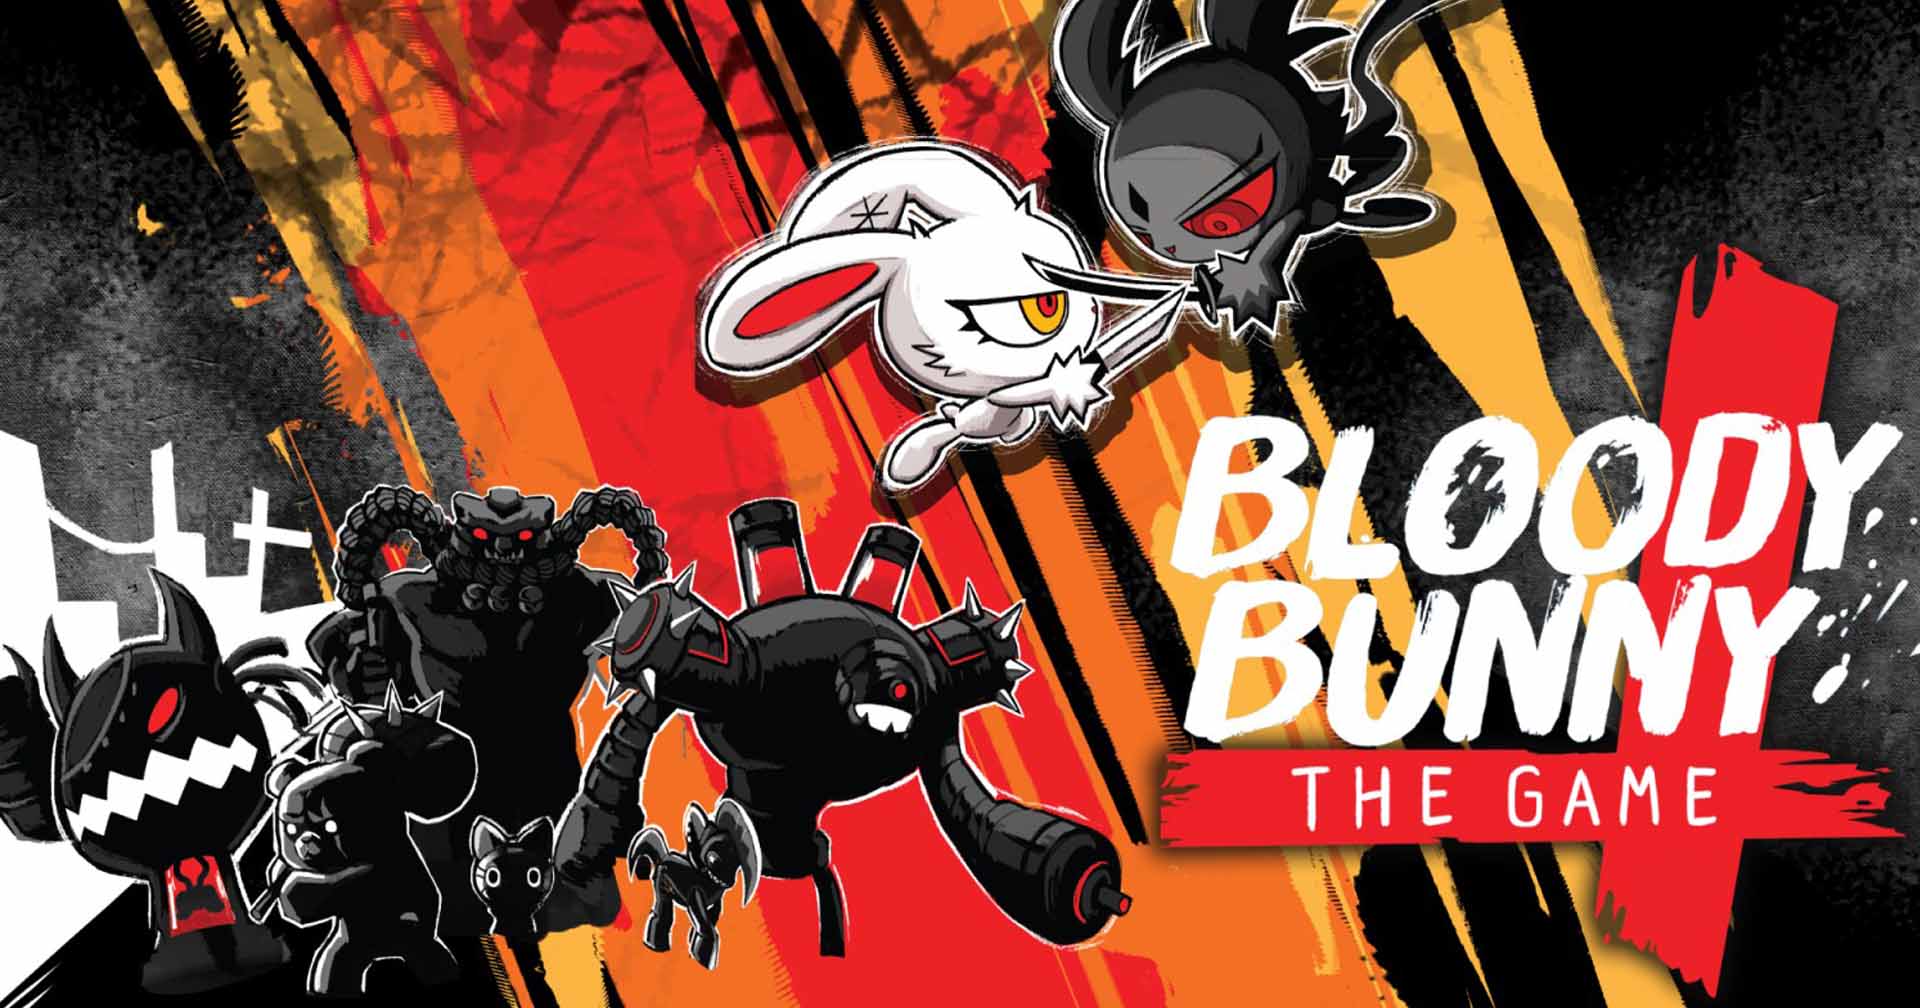 [รีวิวเกม] Bloody Bunny: The Game เกมแอ็กชัน ‘ต่ายดุสู้ฟัด’ จากคาแรกเตอร์ดังฝีมือคนไทย